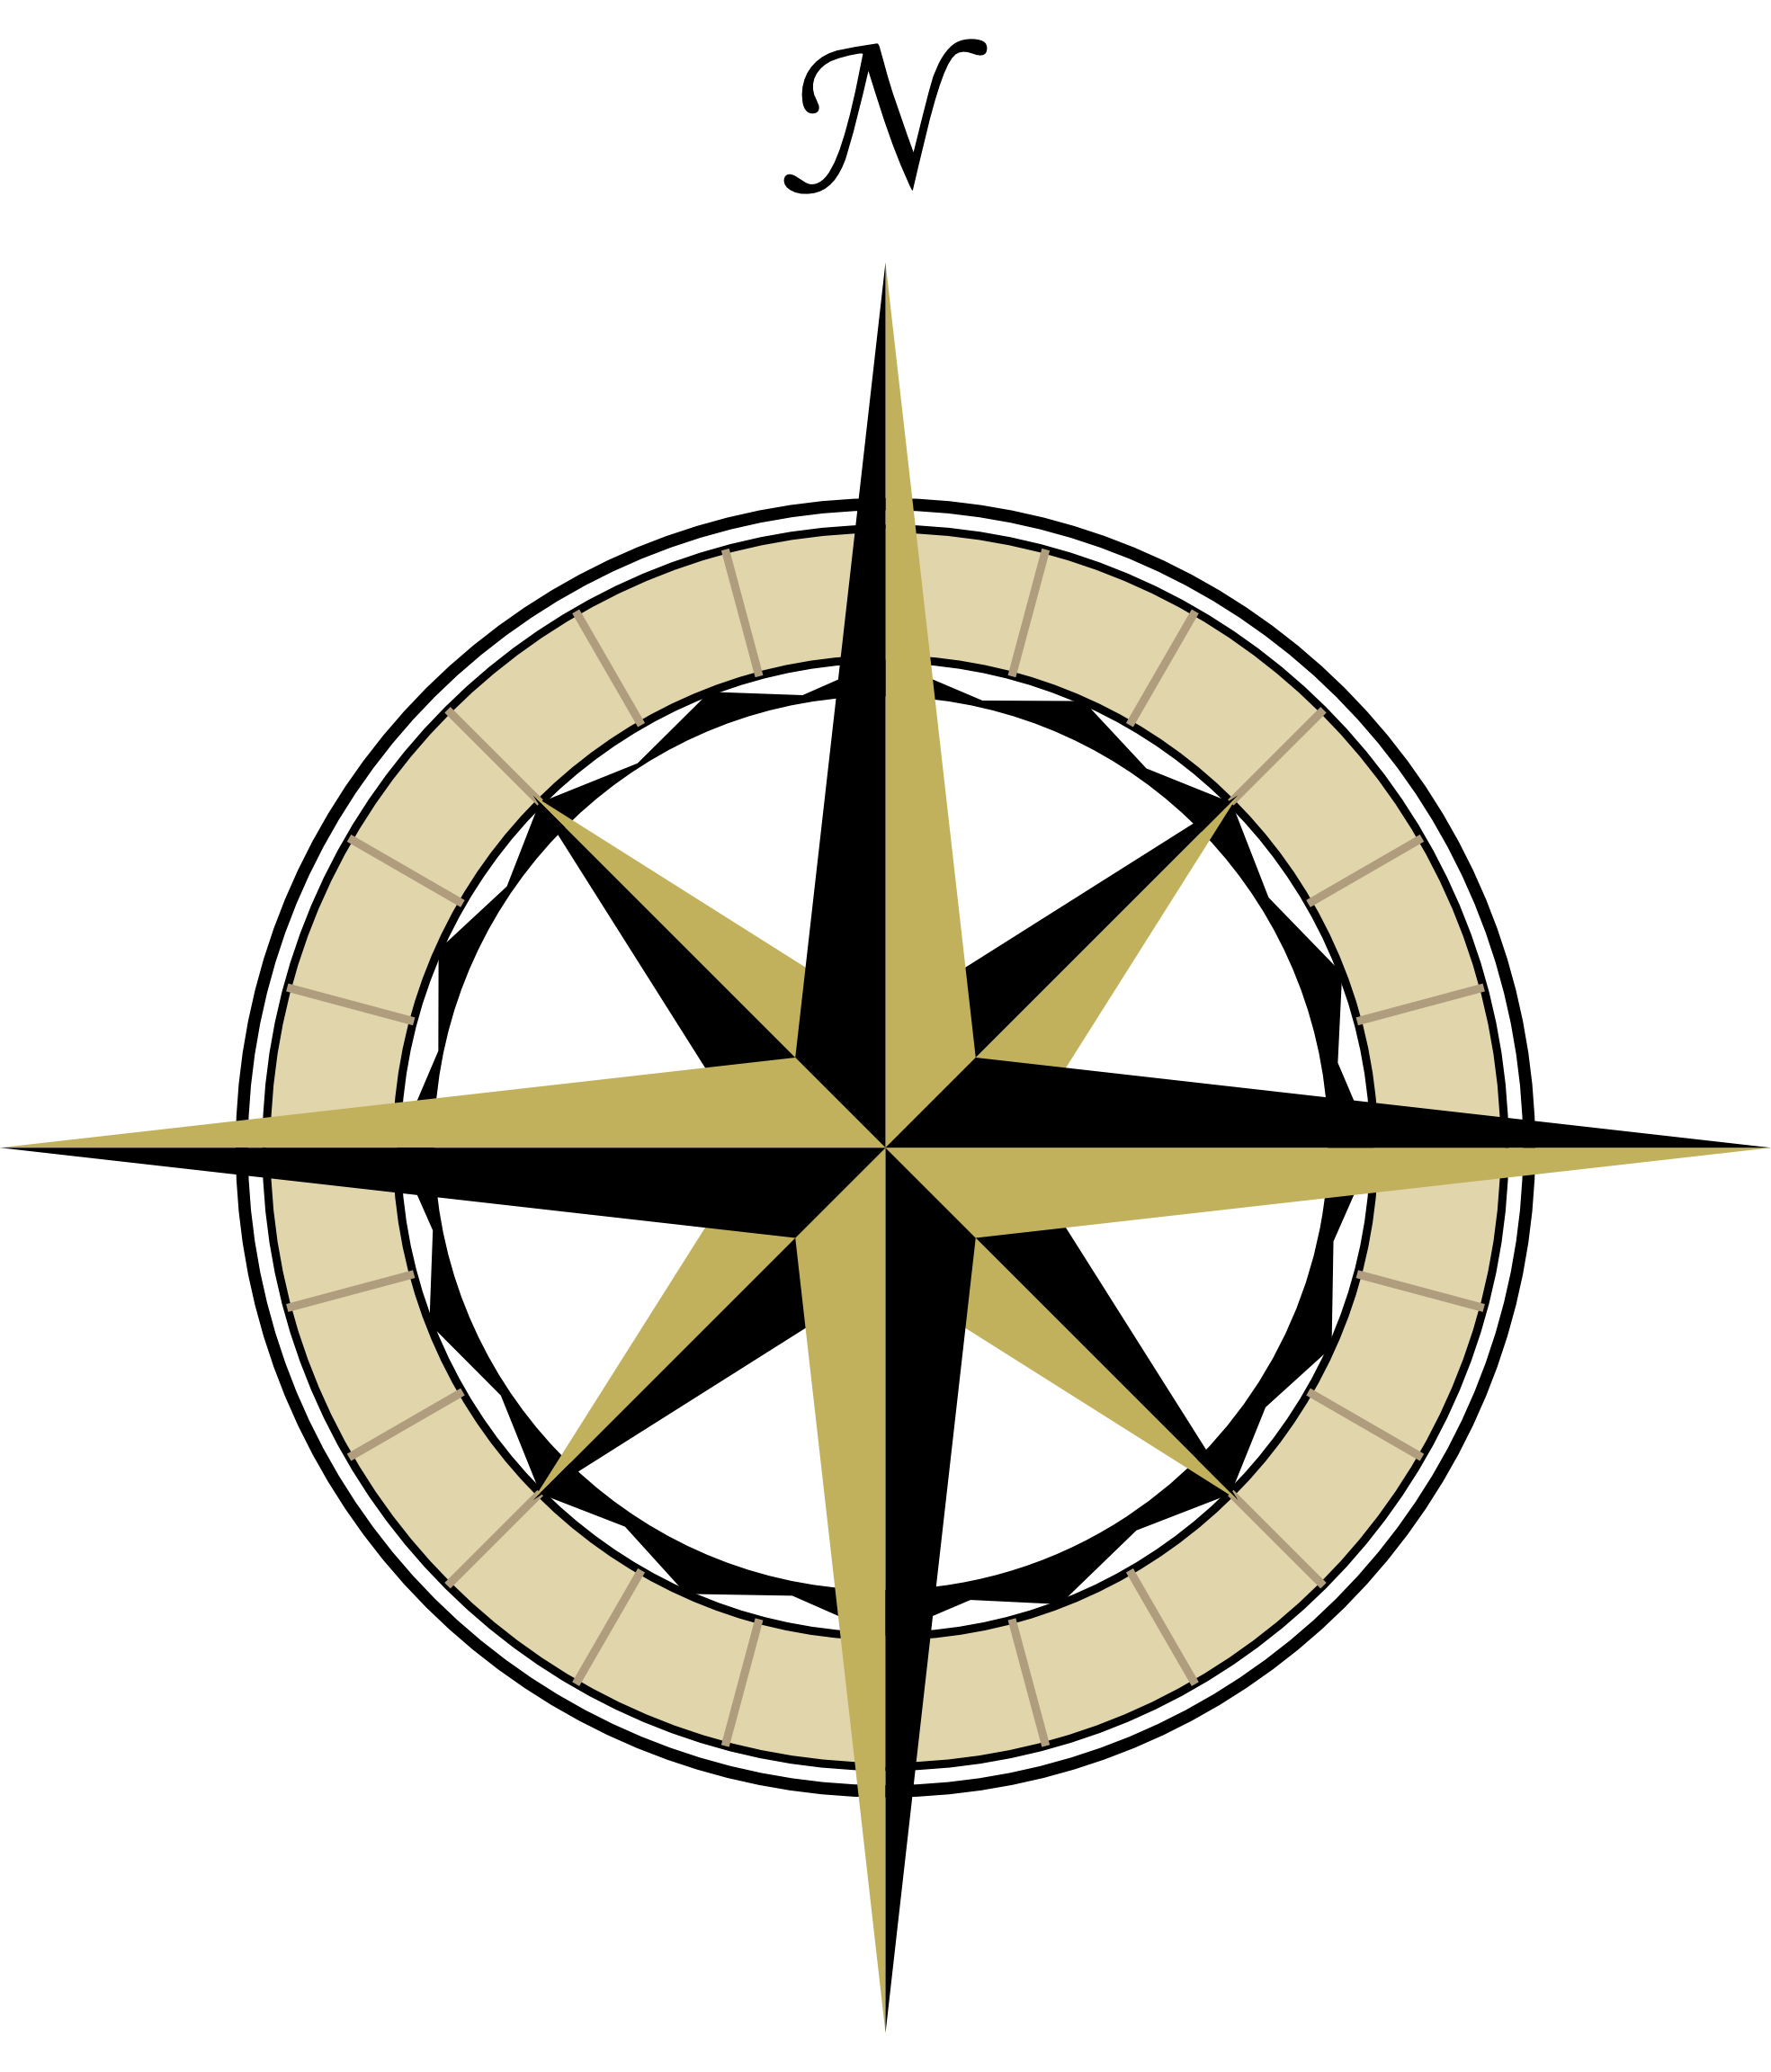 Compass clip art at clker vector clip art 2 - Clipartix